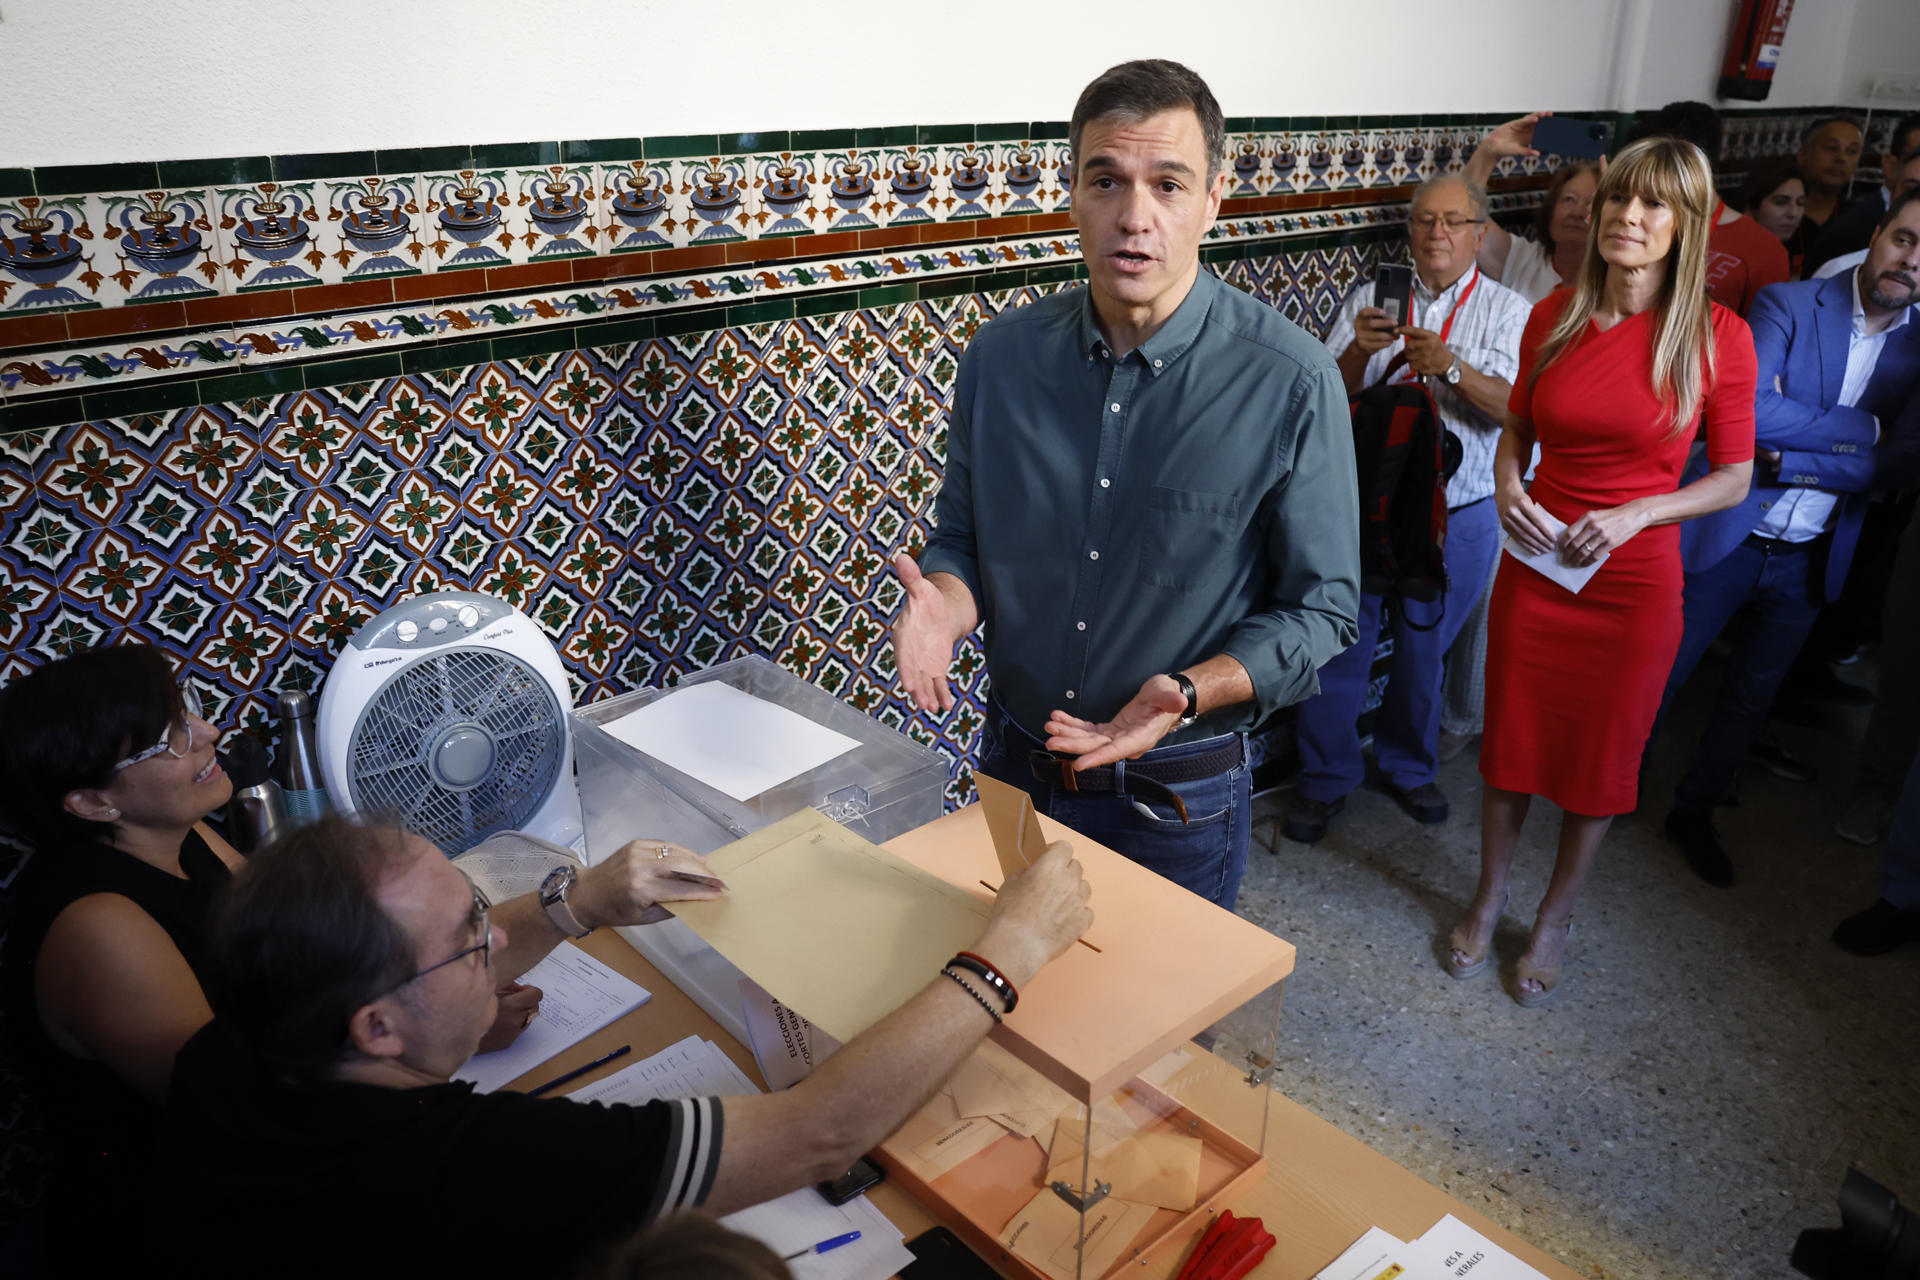 Elecciones en España: Pedro Sánchez votó entre abucheos y gritos de “fuera” y “mentiroso” (VIDEO)